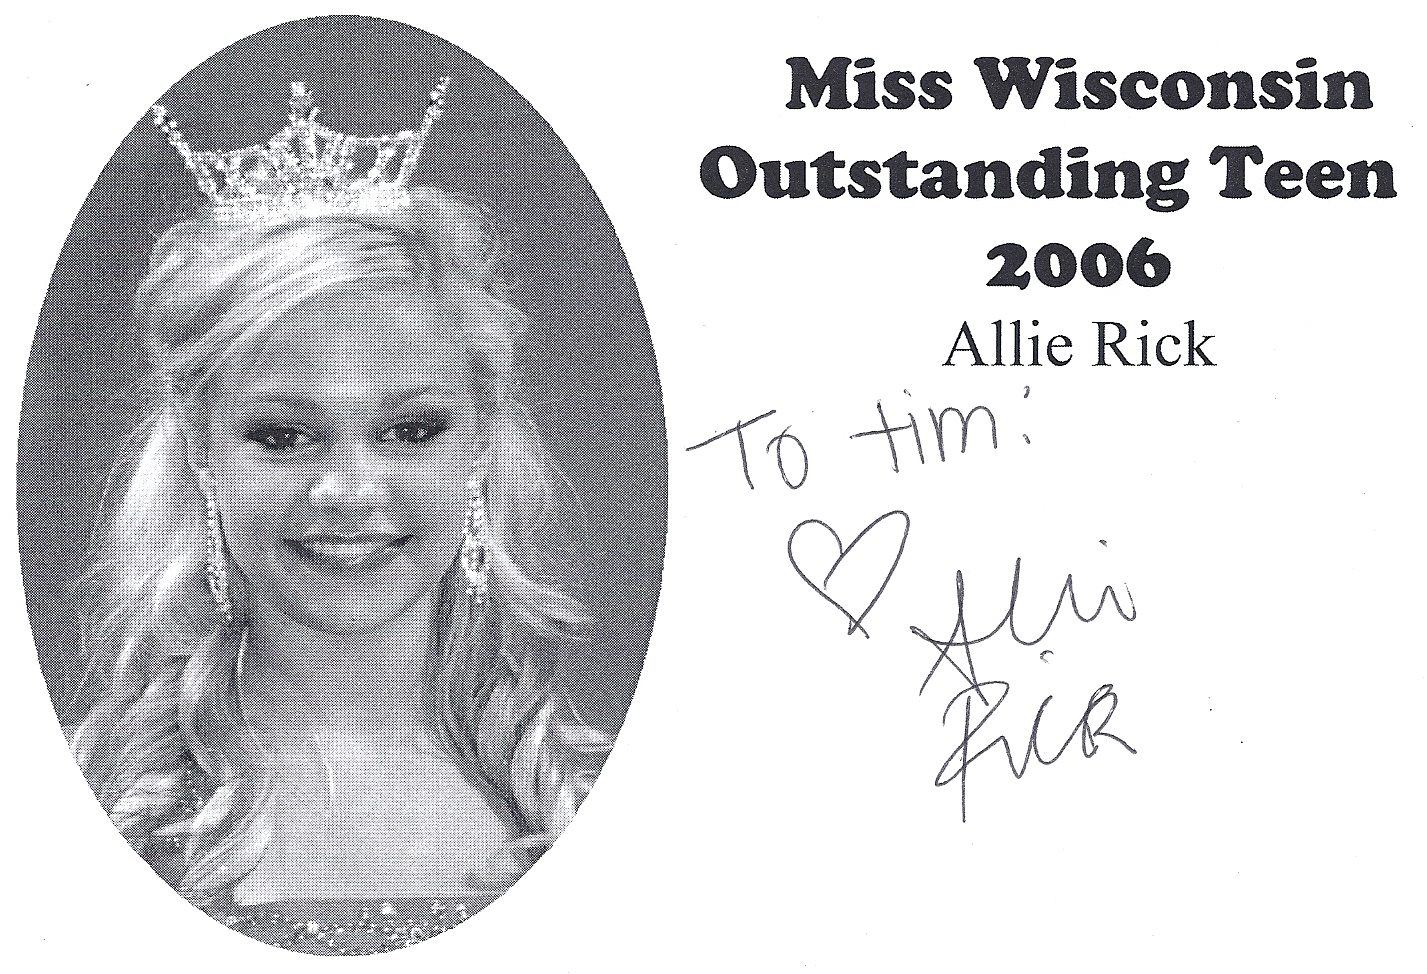 Allie Rick, Miss Wisconsin Outstanding Teen 2006